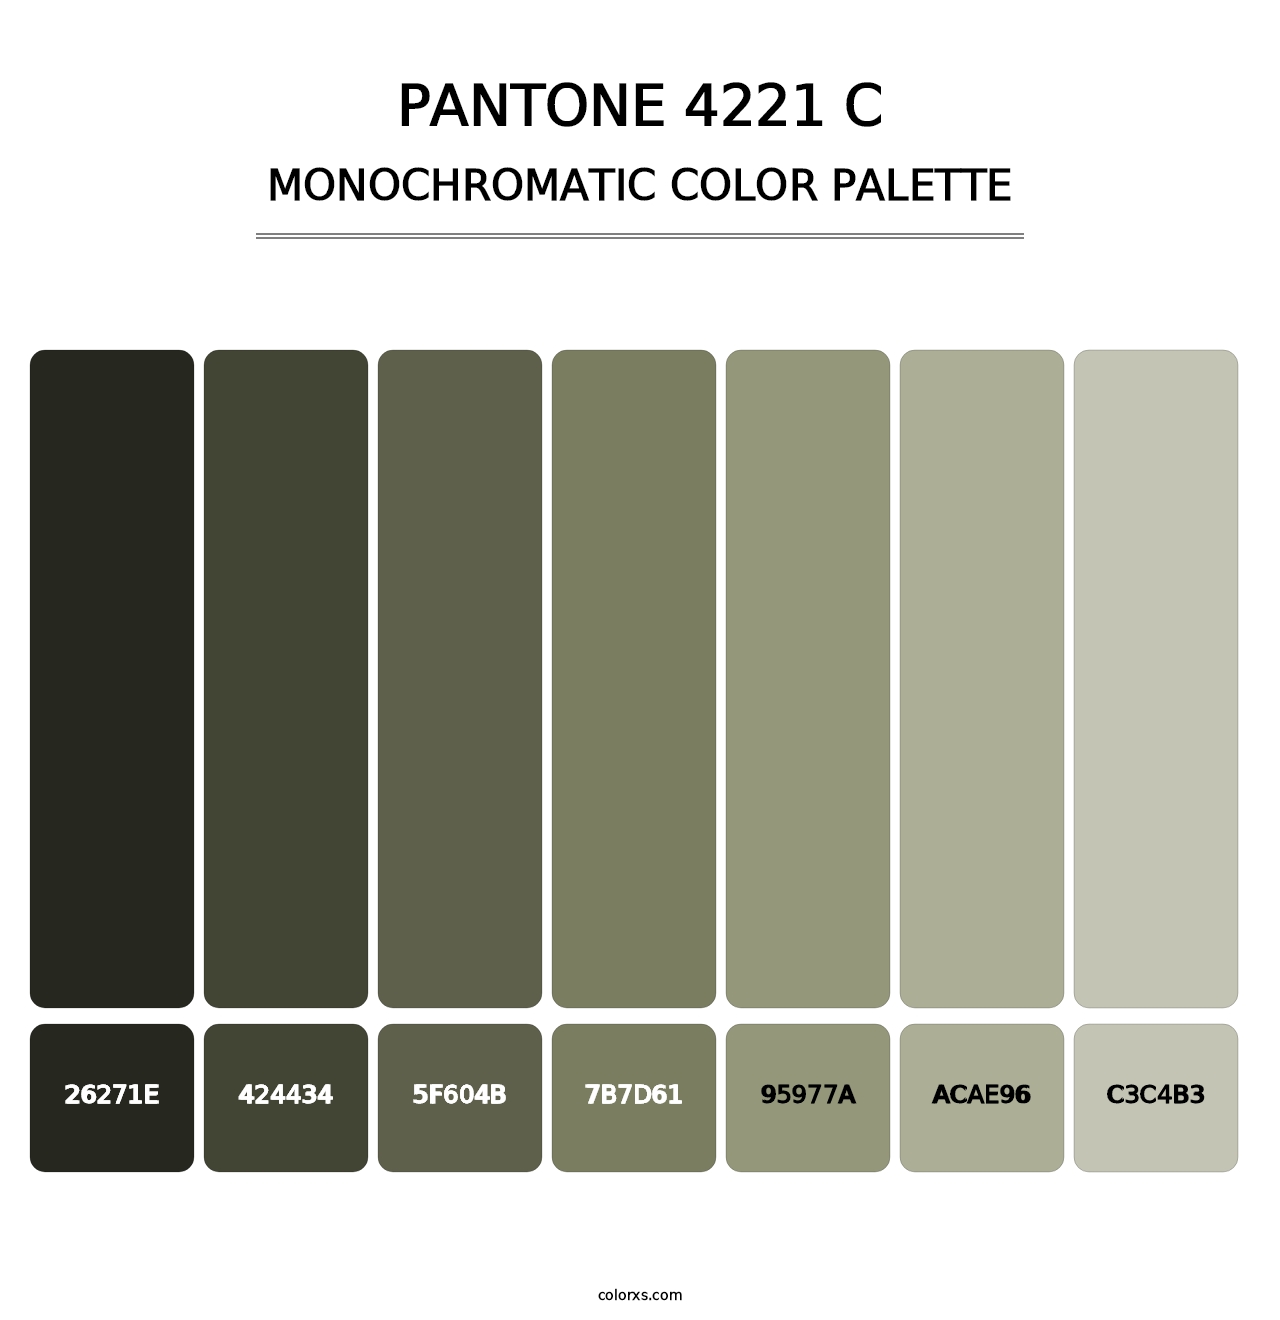 PANTONE 4221 C - Monochromatic Color Palette